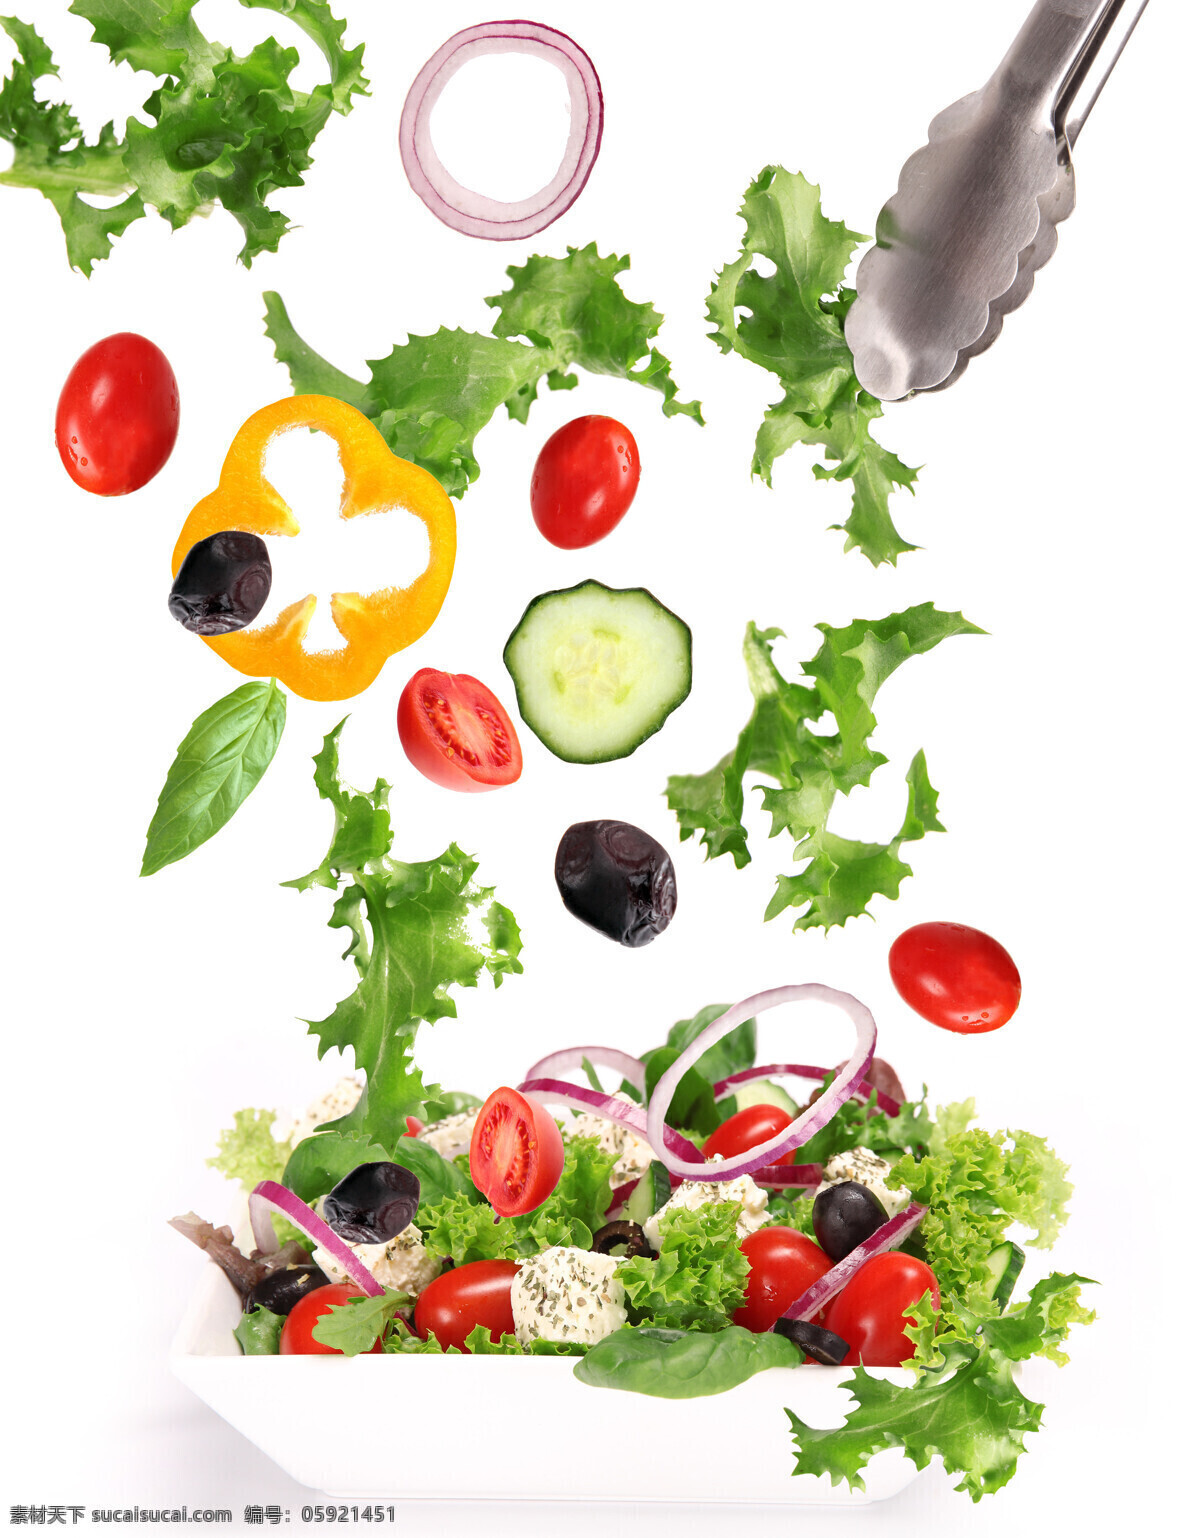 蔬菜沙拉 食物 蔬菜 新鲜 水果沙拉 健康饮食 美味 青菜 西红柿 洋葱 辣椒 青瓜 水果蔬菜 餐饮美食 白色